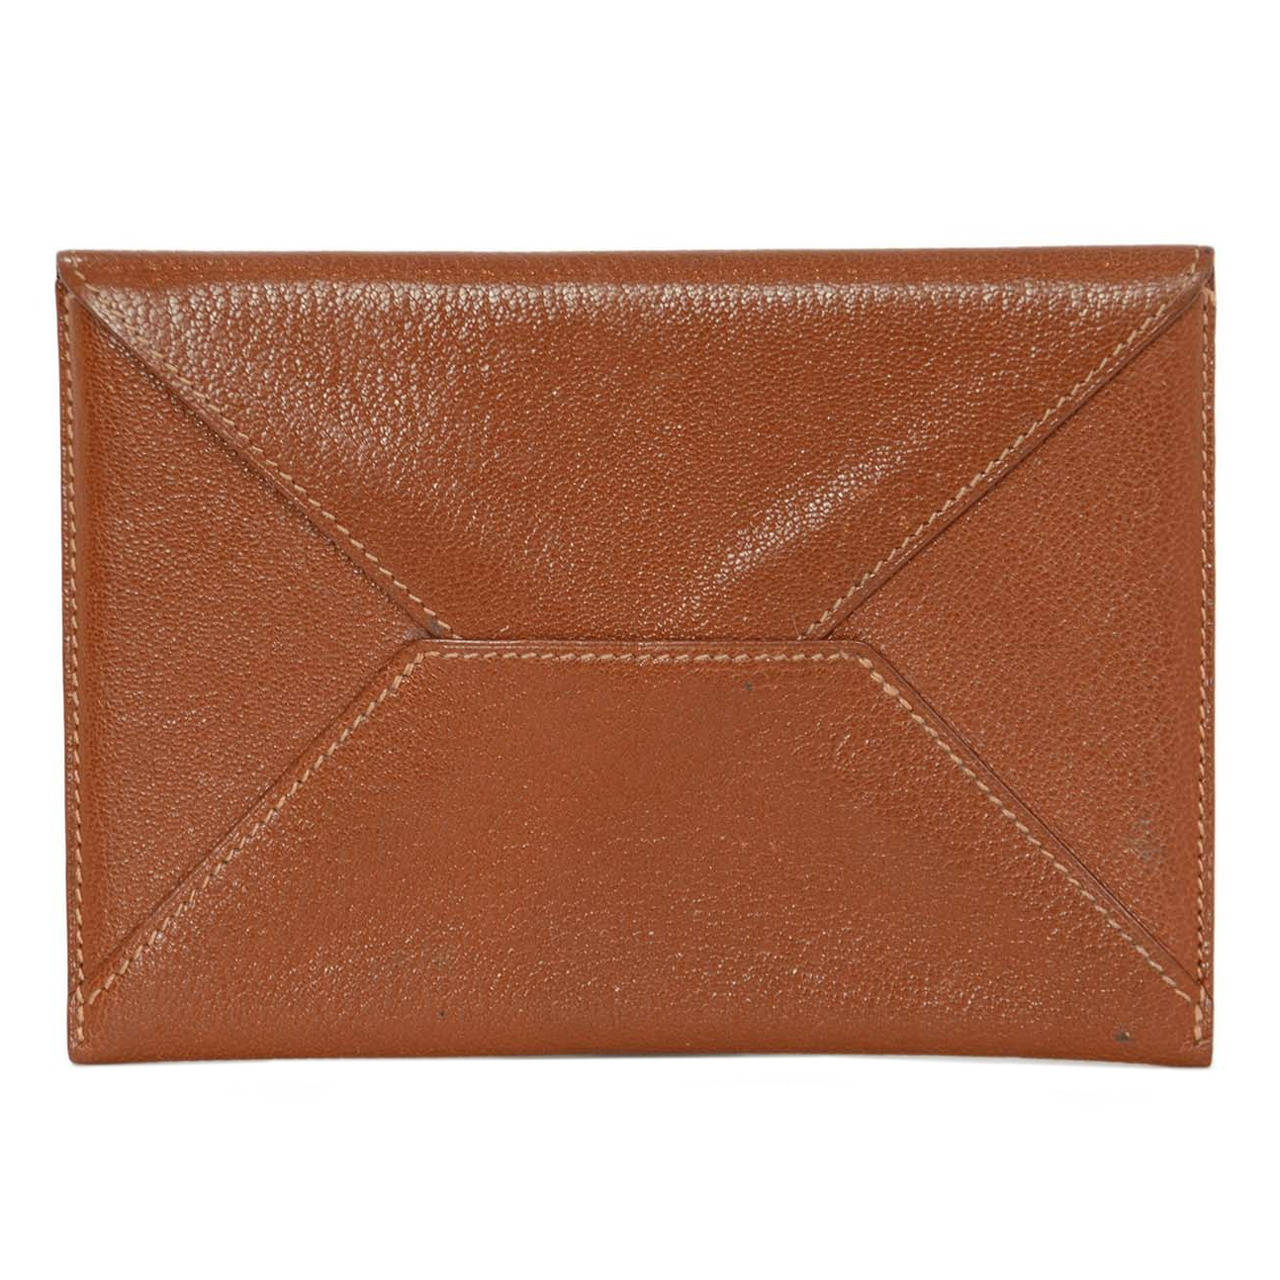 HERMES 2000 Tan Chevre Leather Envelope Pouch/Passpoprt Holder